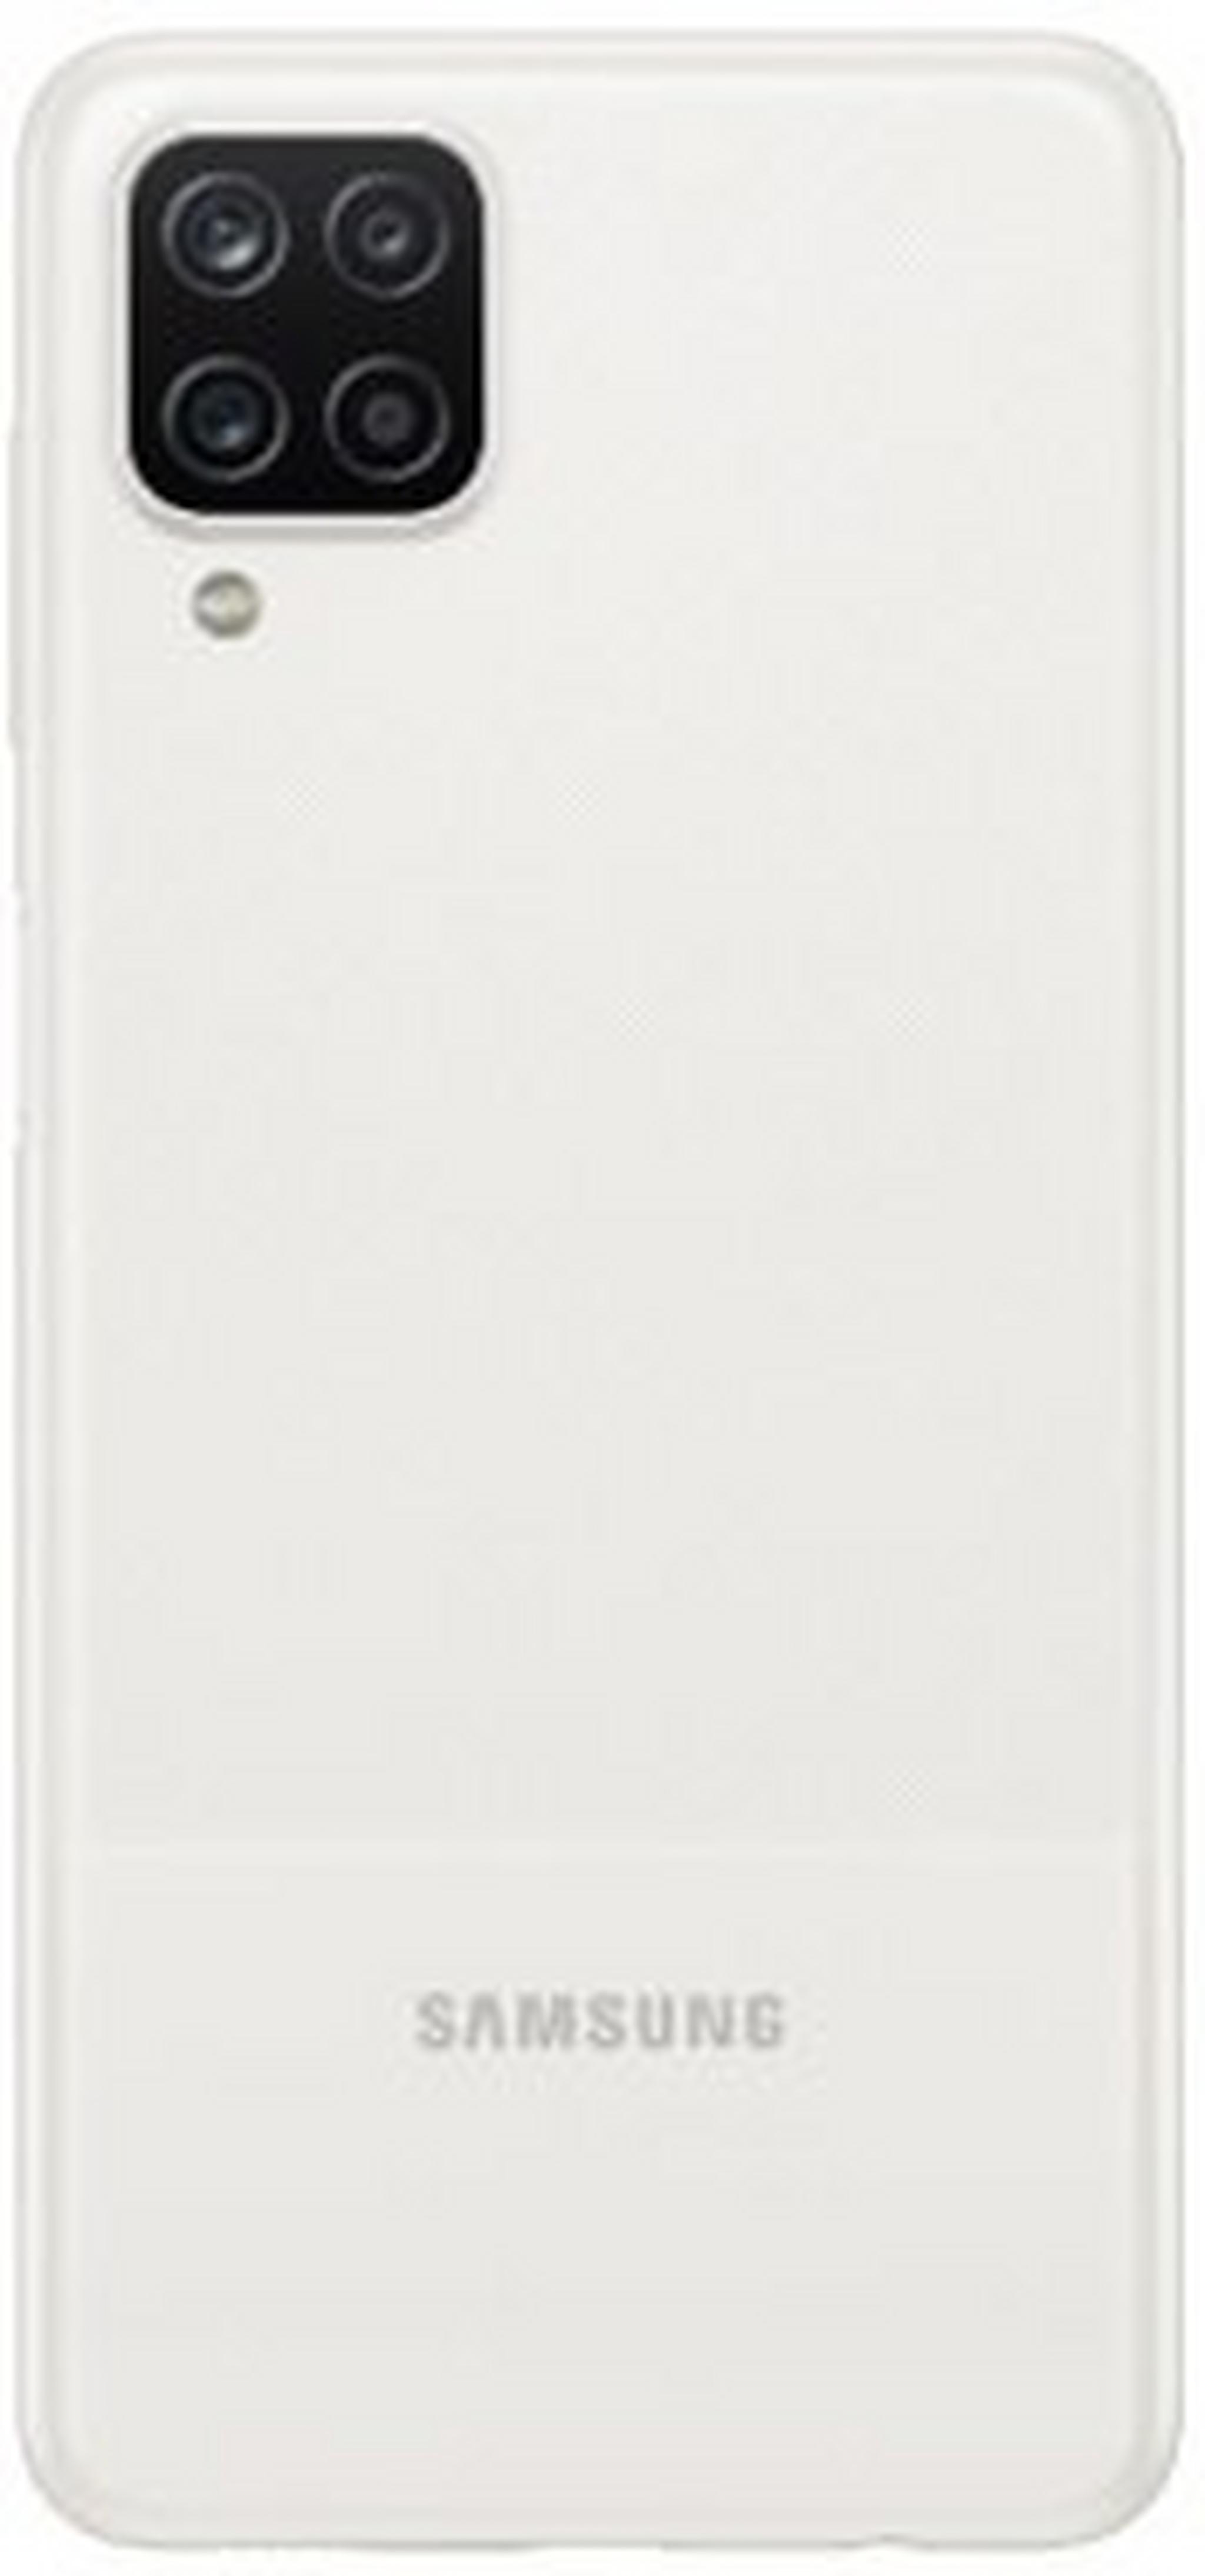 Samsung Galaxy A12 64GB Phone - White